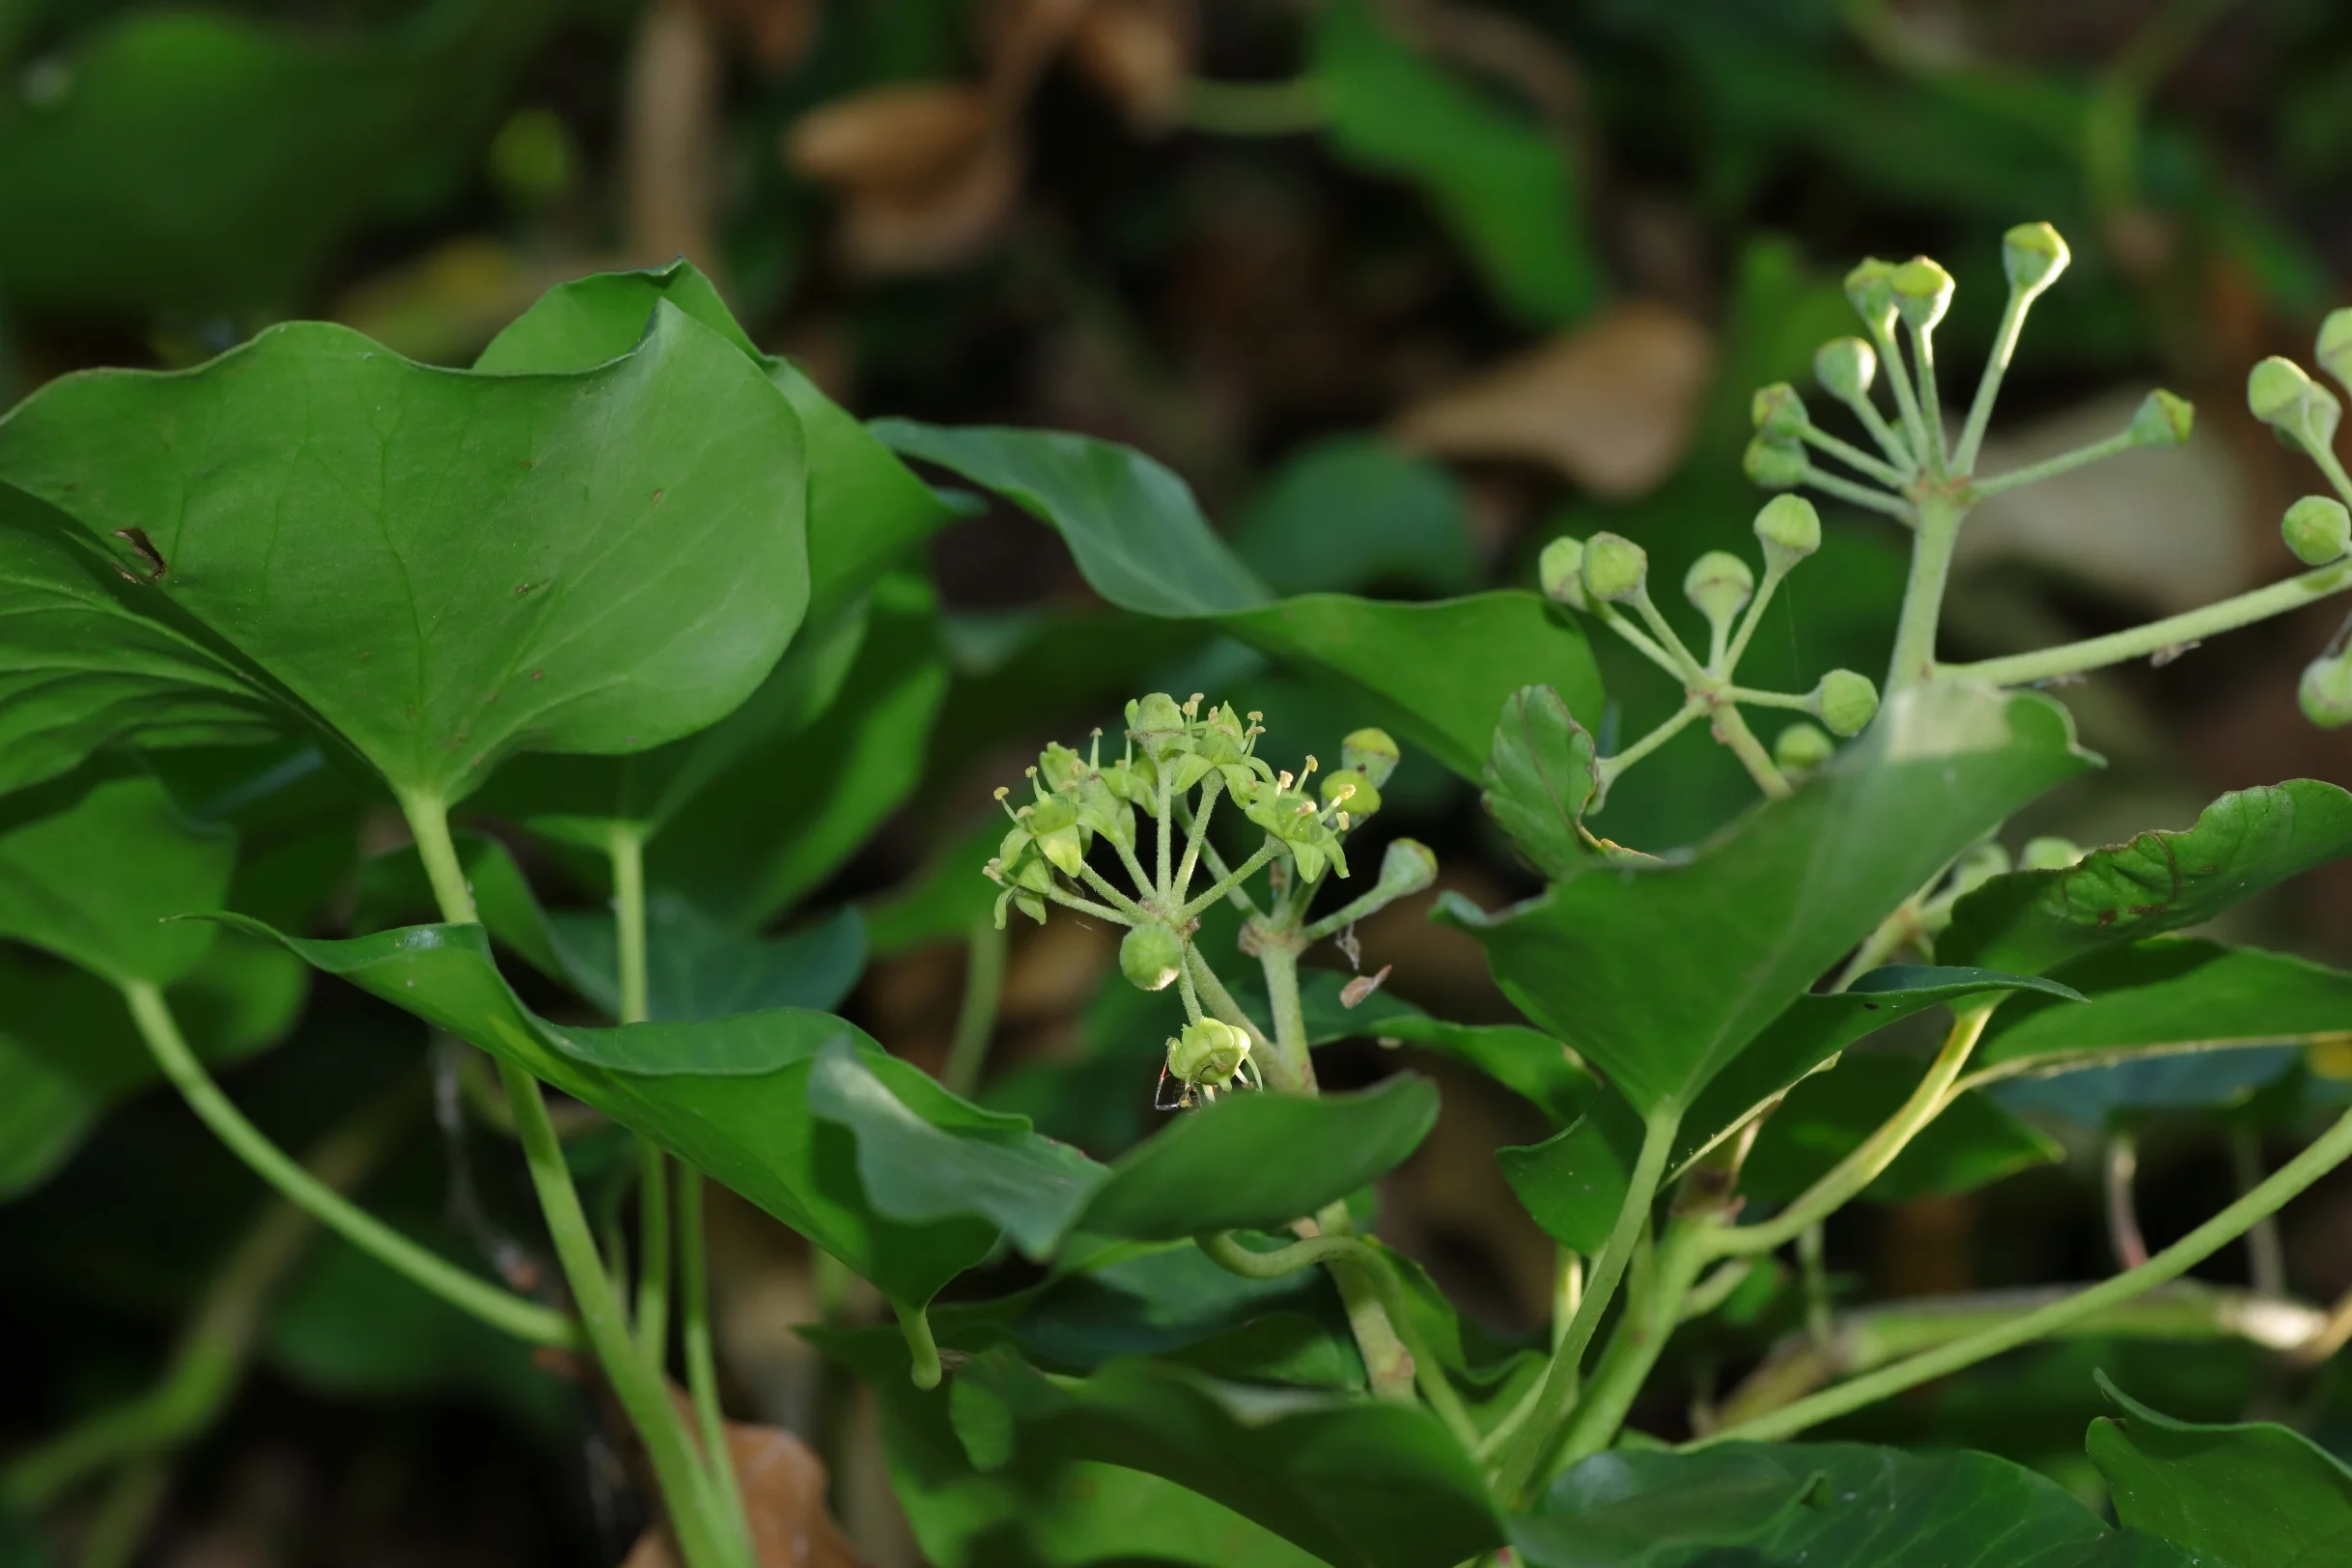 Die grün gefärbten Blüten des Efeu in der Mitte des Bildes. in einer Halbkugel angeordnet. Die Blüten besitzen fünf Blütenblätter und haben bis zu vier Blütenstempel.